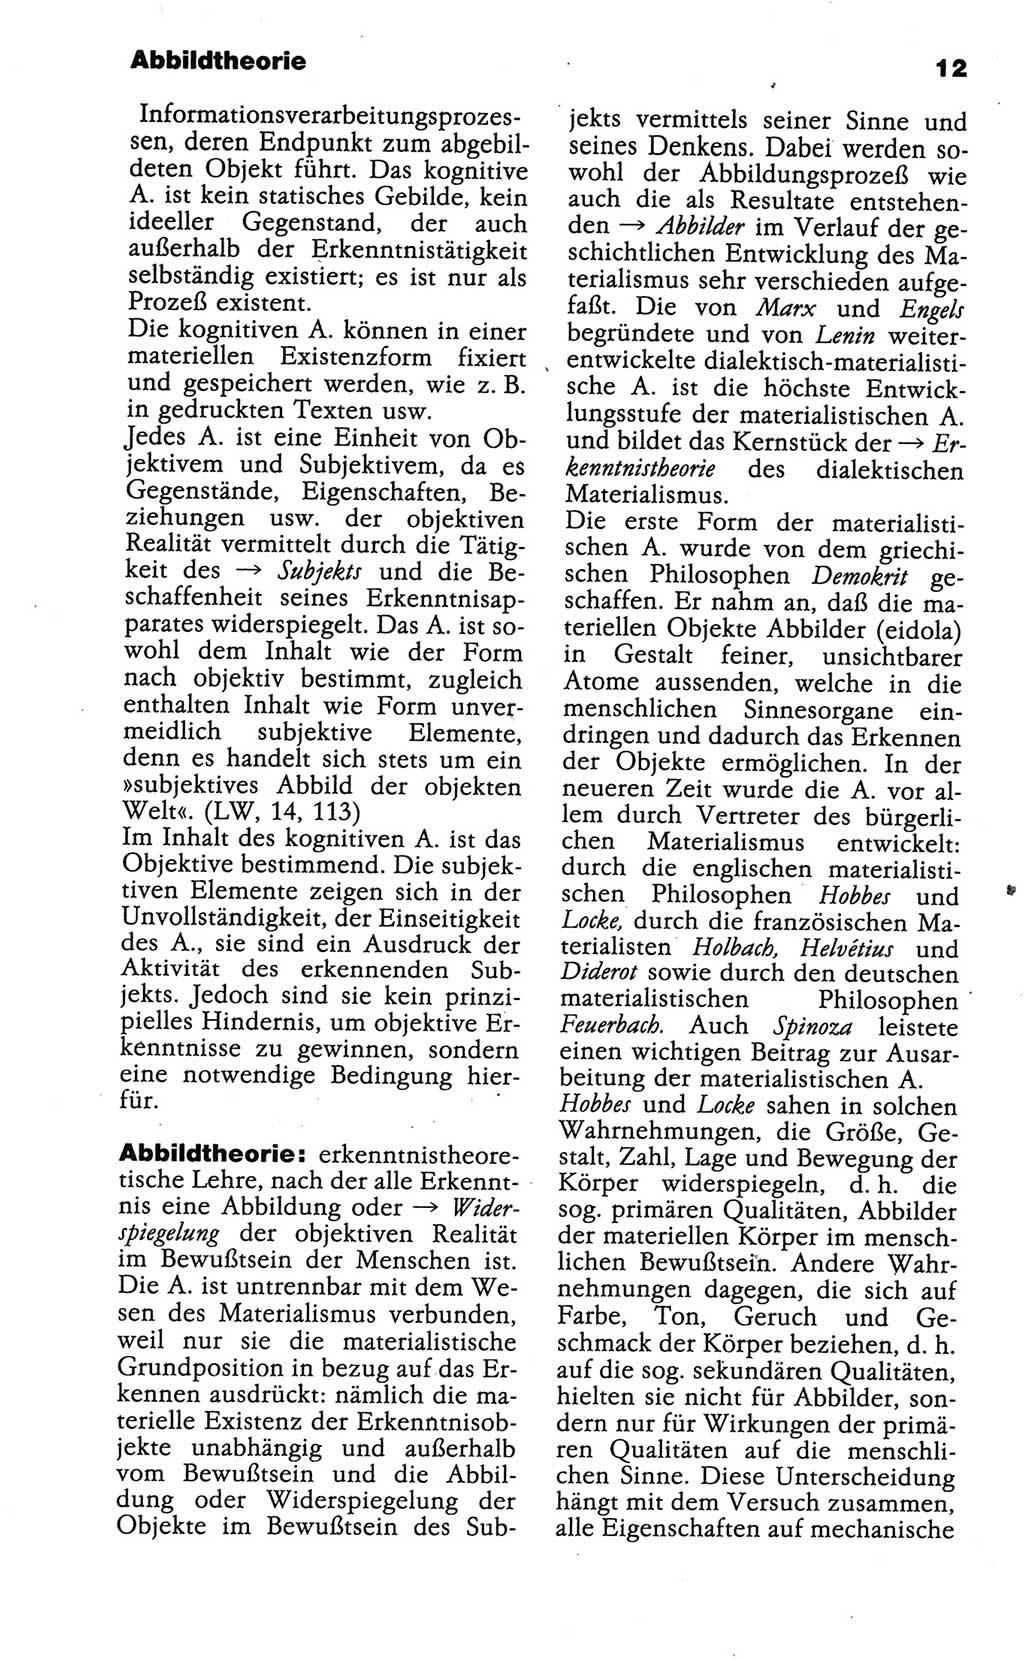 Wörterbuch der marxistisch-leninistischen Philosophie [Deutsche Demokratische Republik (DDR)] 1986, Seite 12 (Wb. ML Phil. DDR 1986, S. 12)